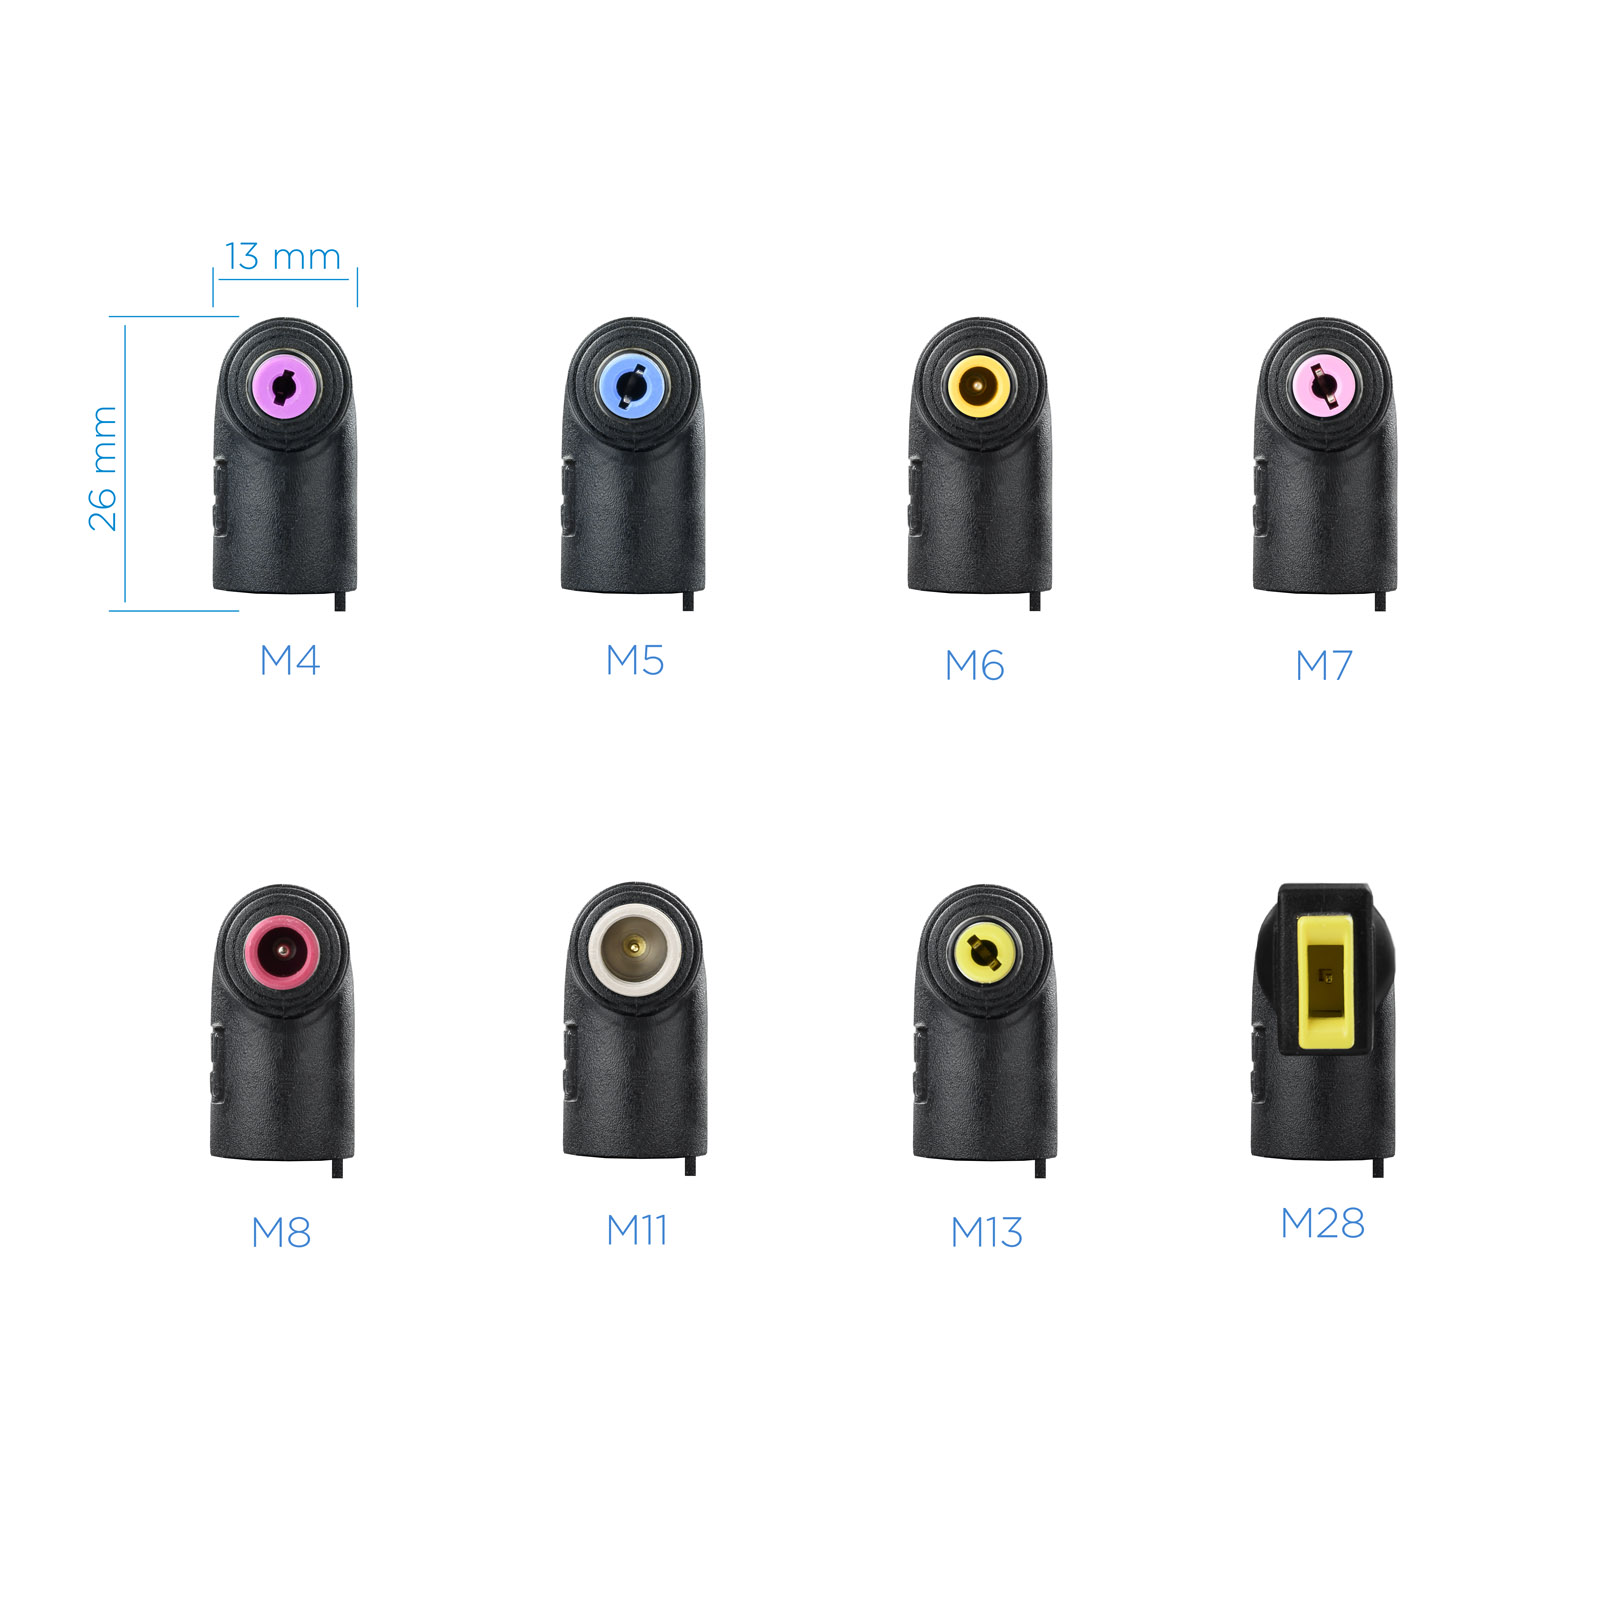 Tooq Chargeur Automatique Universel pour Ordinateur Portable 65W - USB - 8 Adaptateurs - Tension 18.5-20V